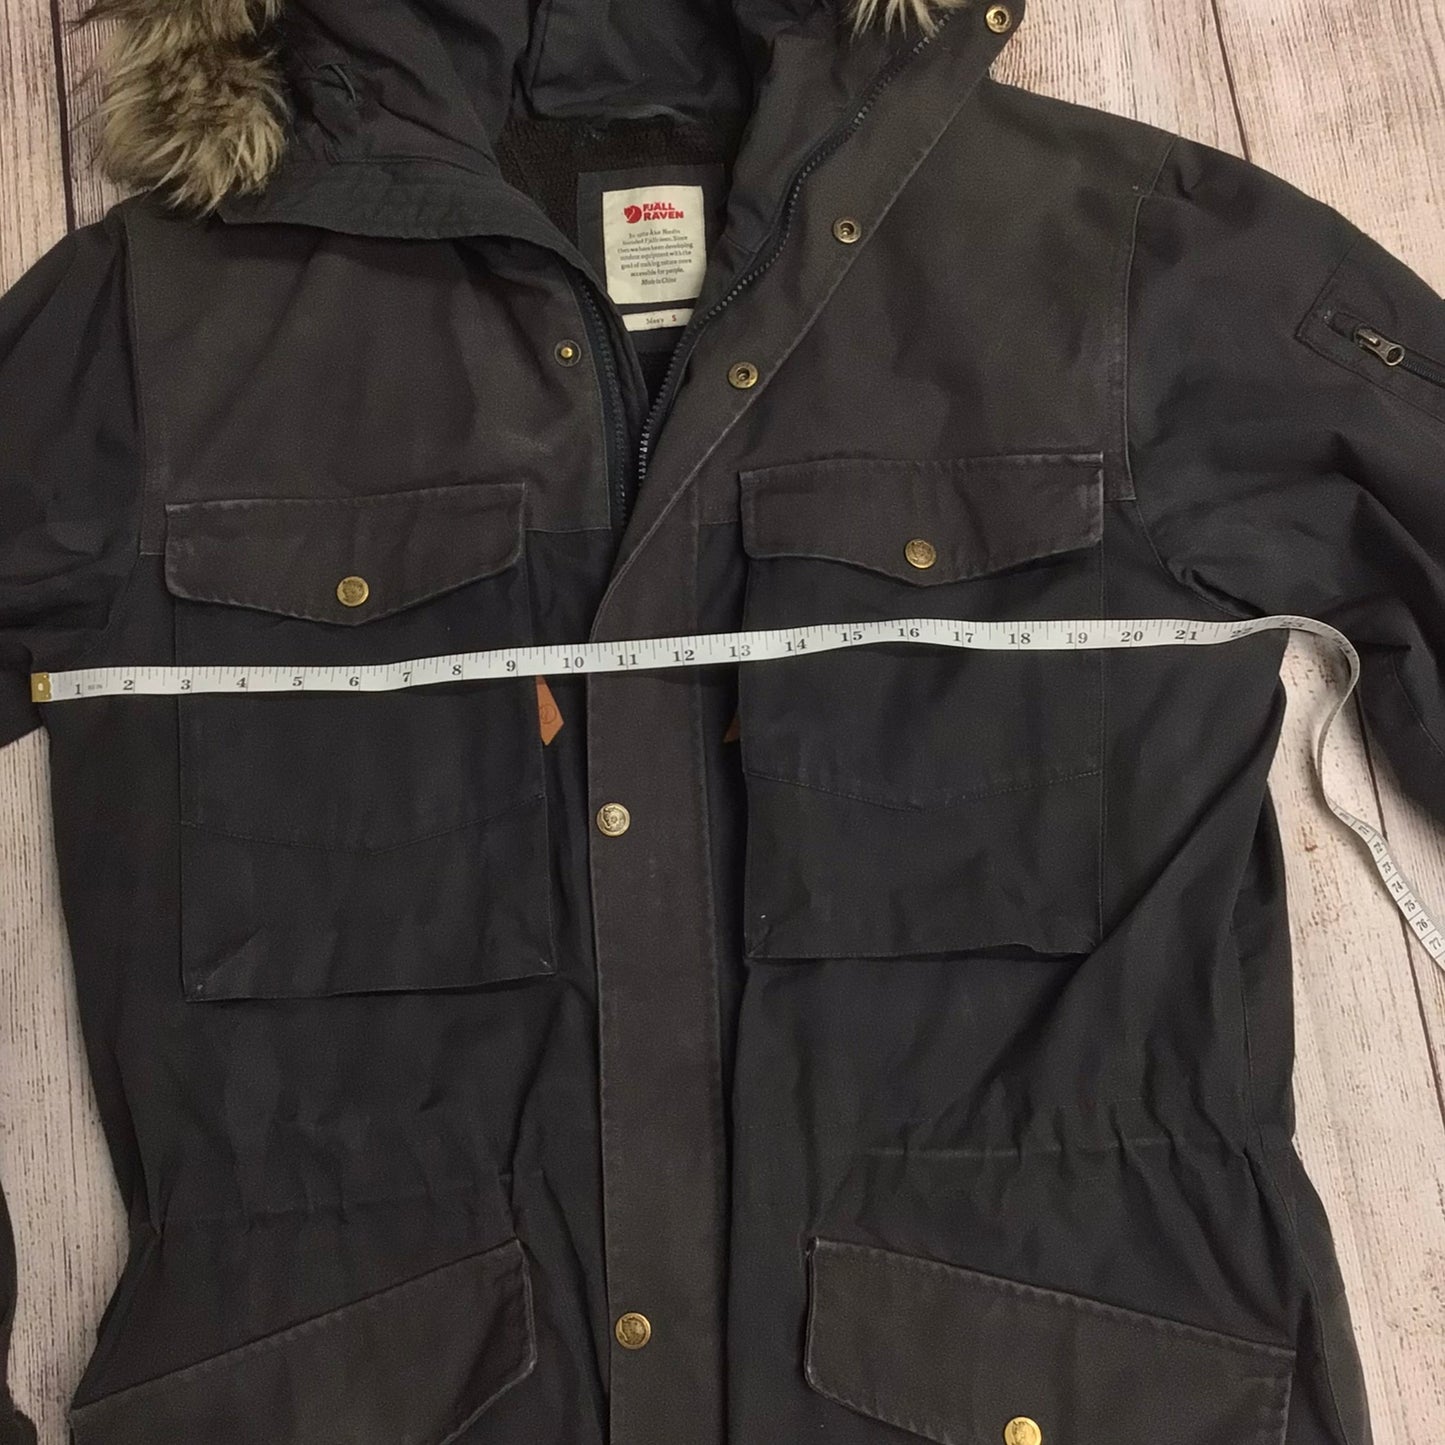 Fjällräven Dark Grey Singi Winter Parka Jacket Greenland G-1000 Size S